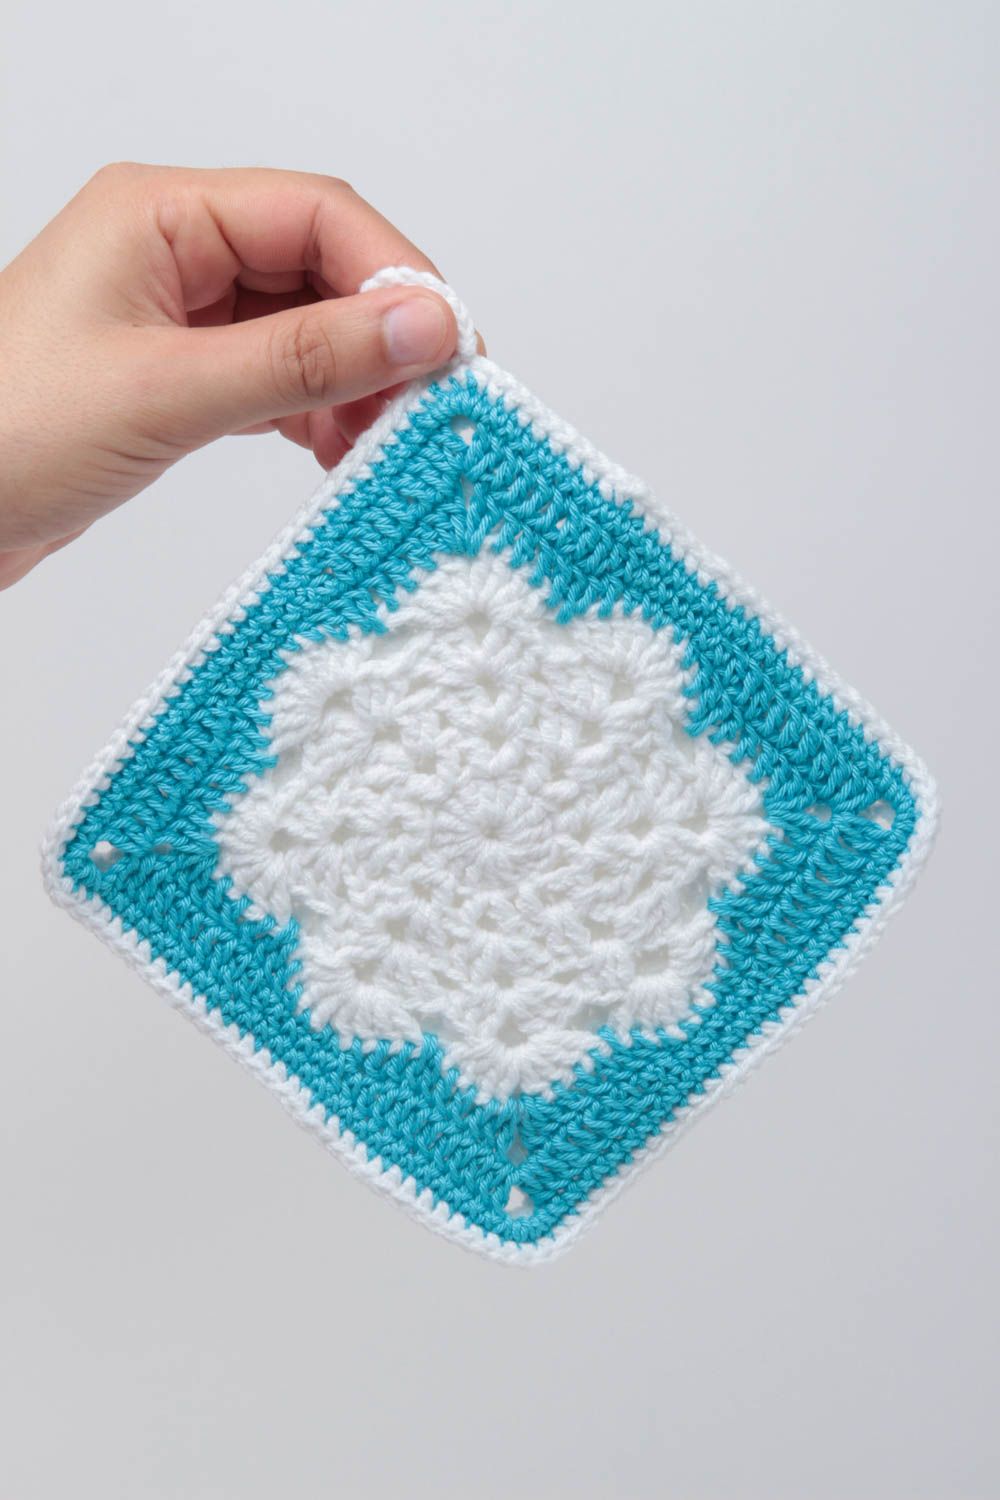 Stylish handmade pot holder crochet potholder home textiles kitchen design photo 4